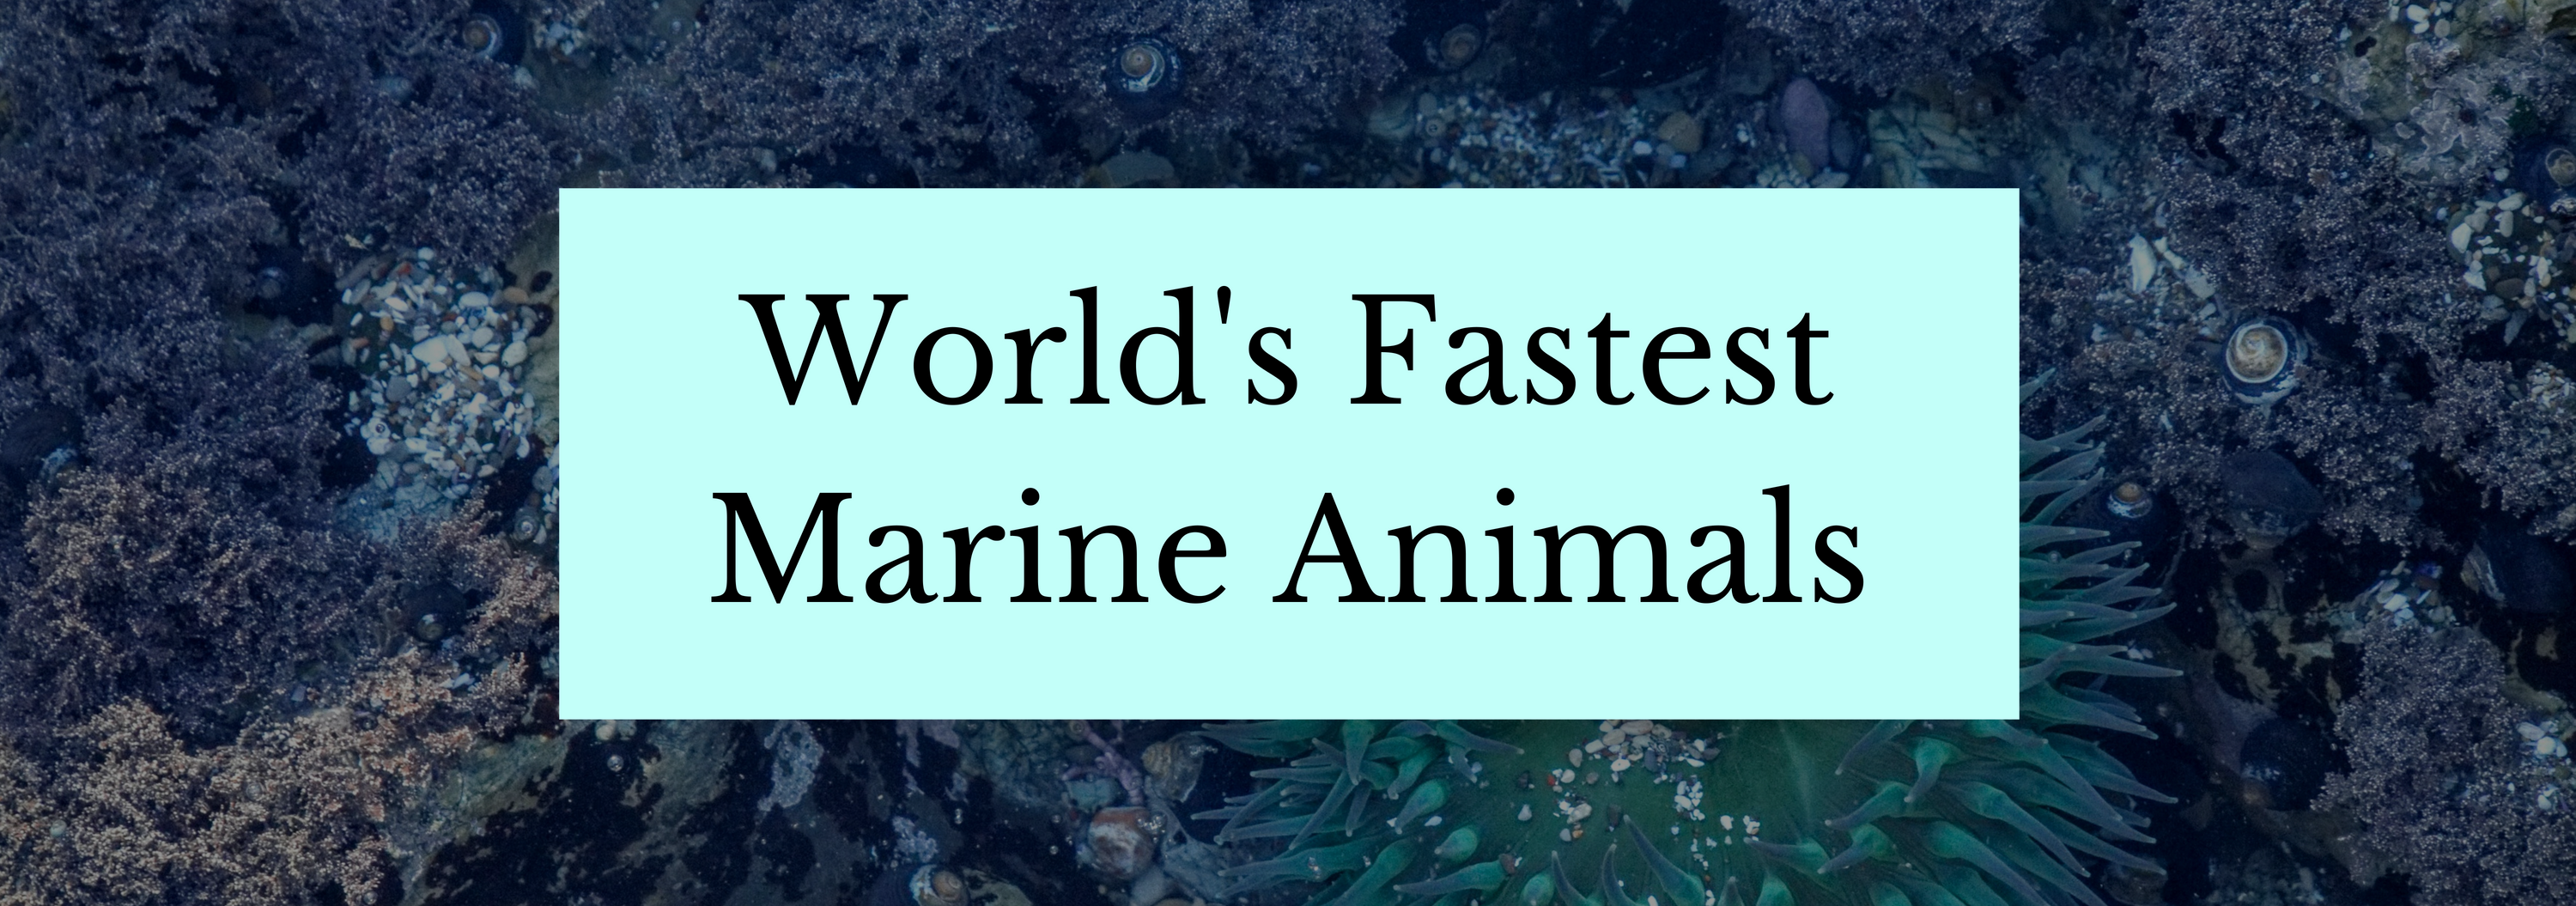 World's Fastest Marine Animals